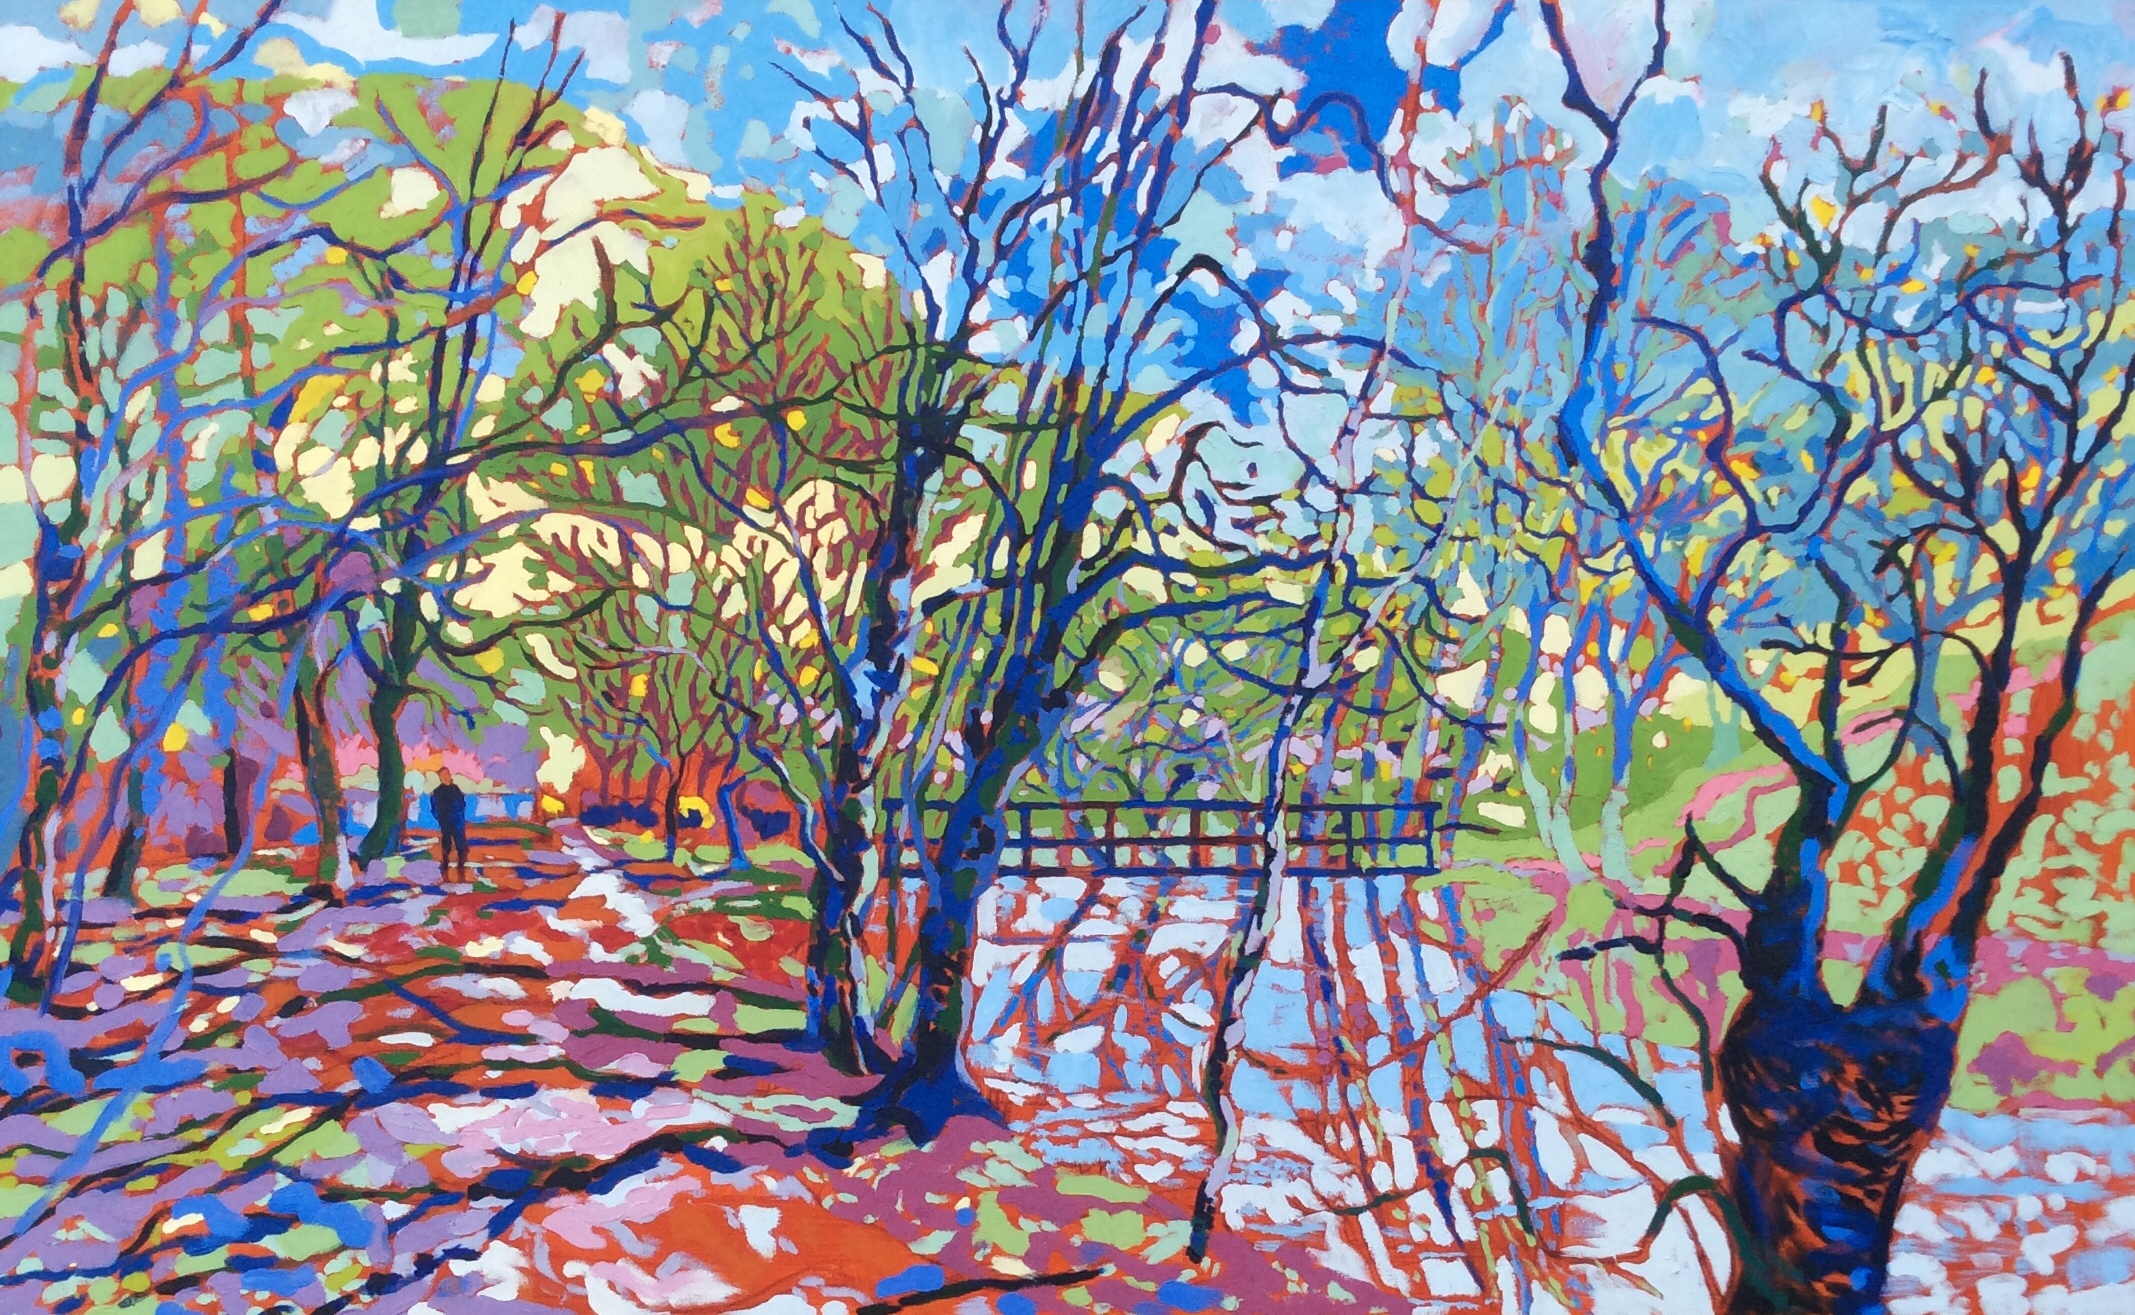 Coldeaton Bridge in Winter. Oil on canvas. 100 x 161 cm. (Sold)